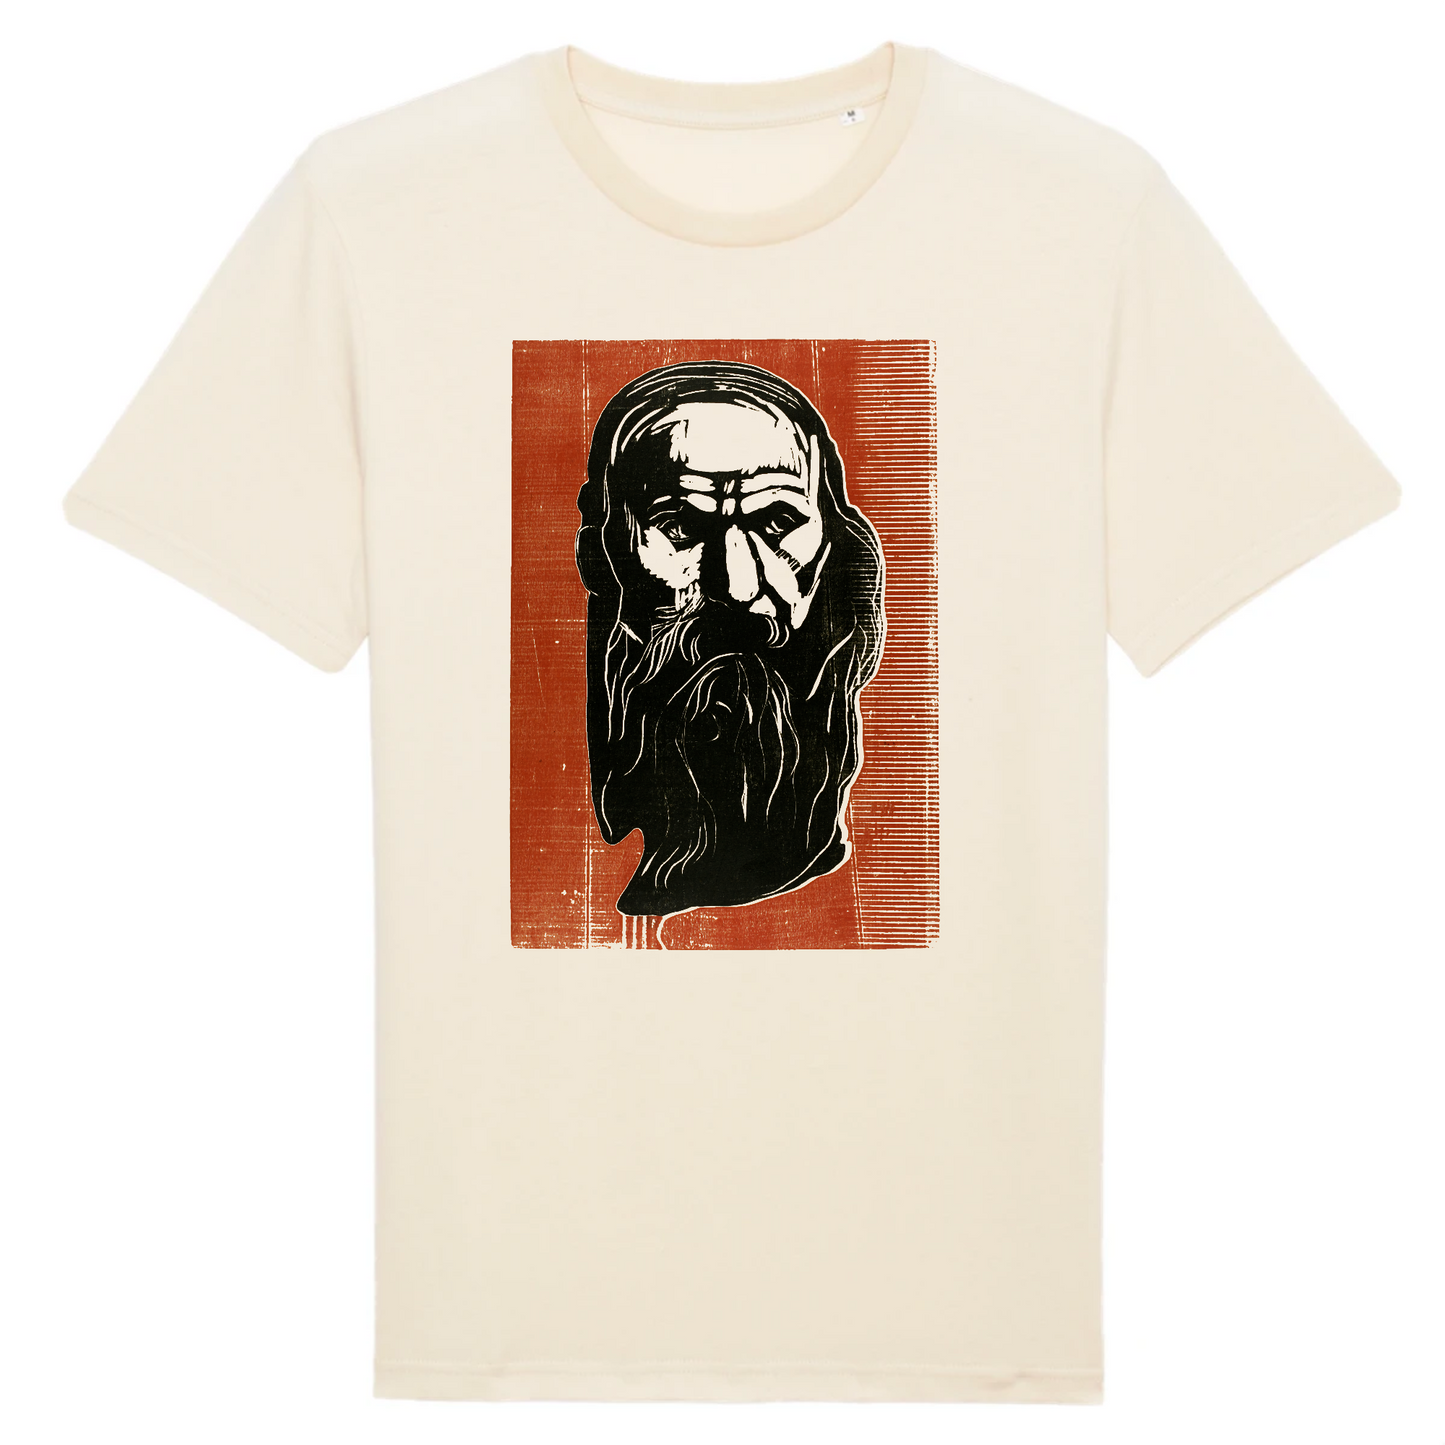 Tête d'un vieil homme à barbe par Edvard Munch, 1902 - T-shirt en coton biologique